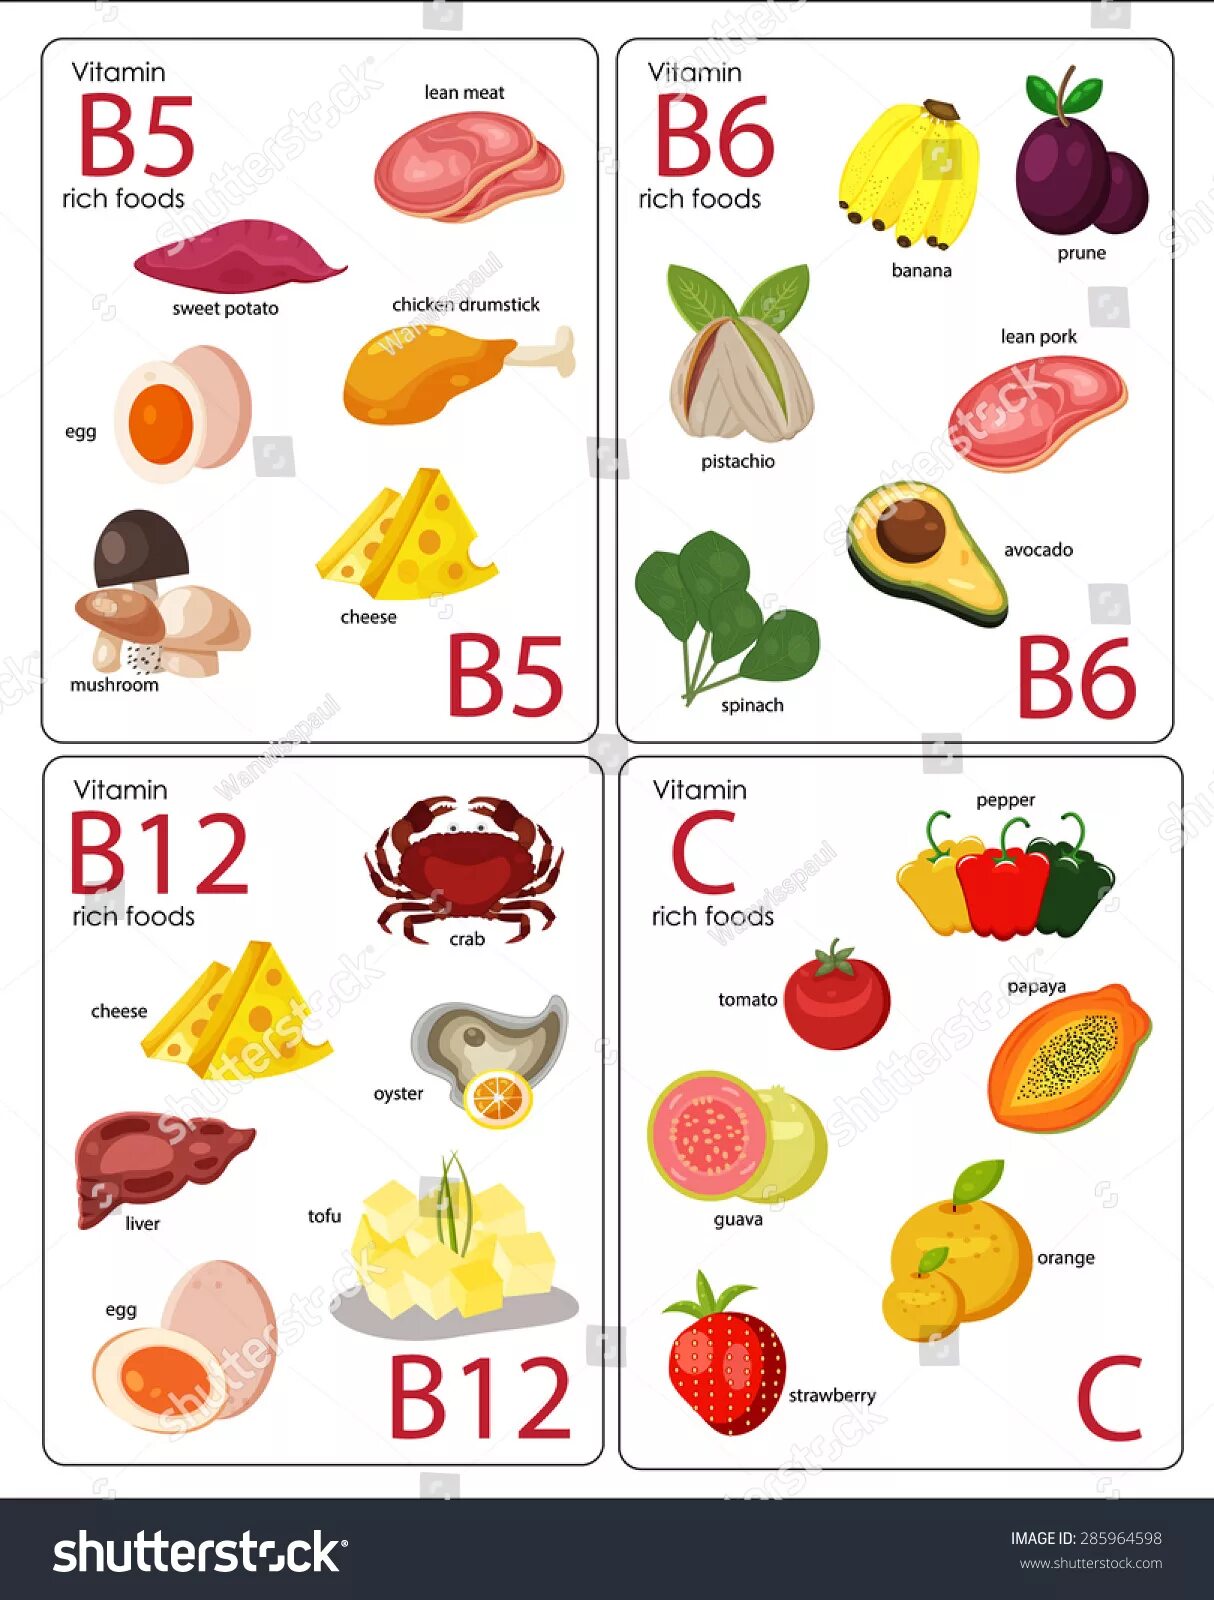 B2 b5 b6 b9. Витамины b6, b12, b5. B2 b3 b5 витамины. Витамины b1 b3 b5 b6 b12. B1 b2 b6 b12 витамины.